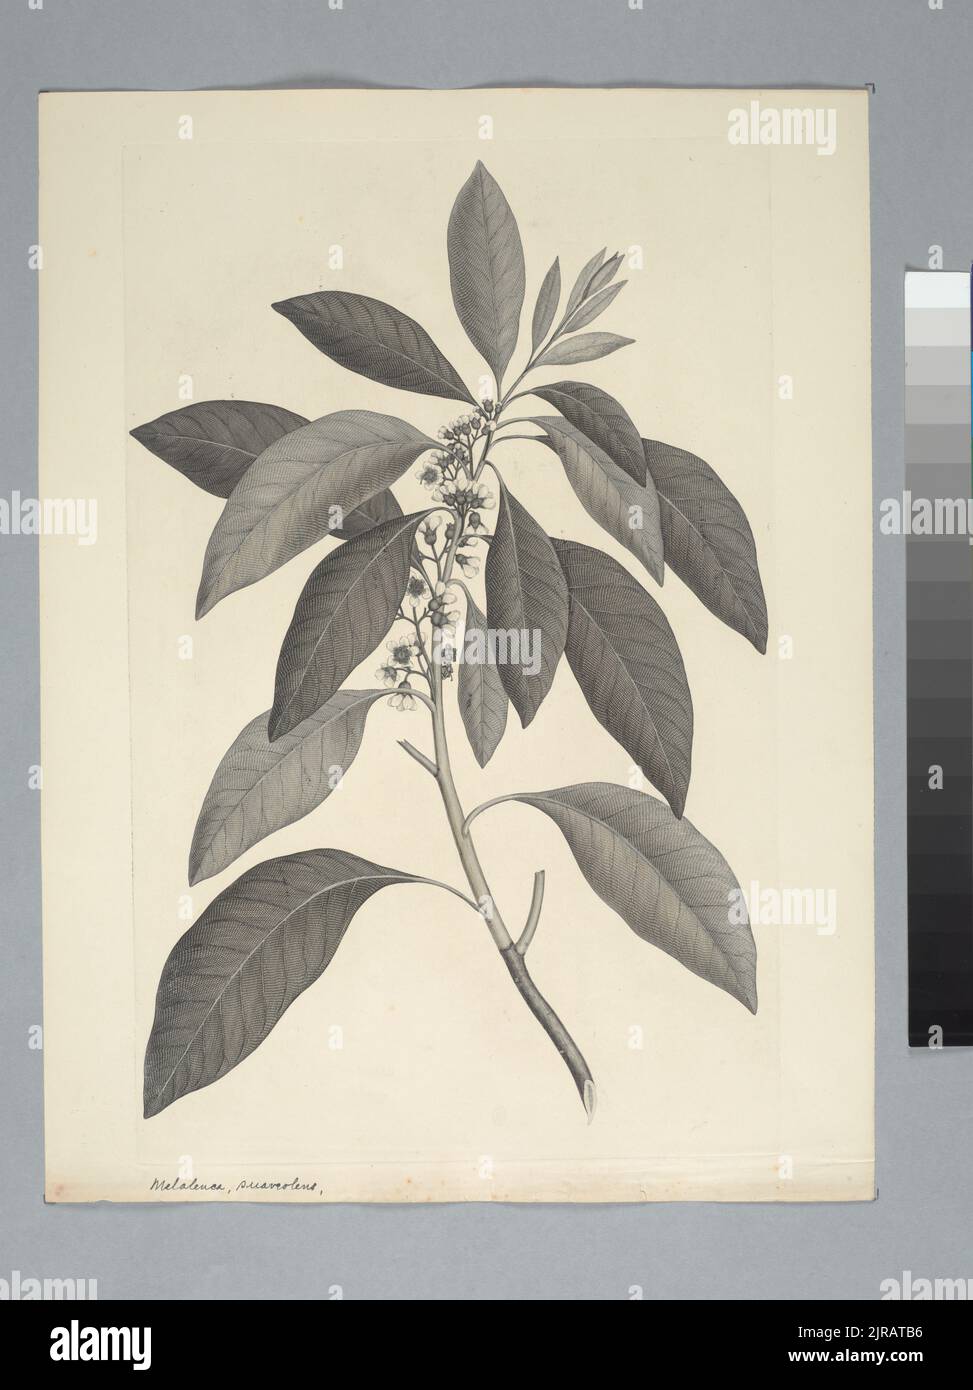 Tristania suaveolens (Solander ex Gaertner) Smith in Rees, von Sydney Parkinson. Schenkung des British Museum, 1895. Stockfoto